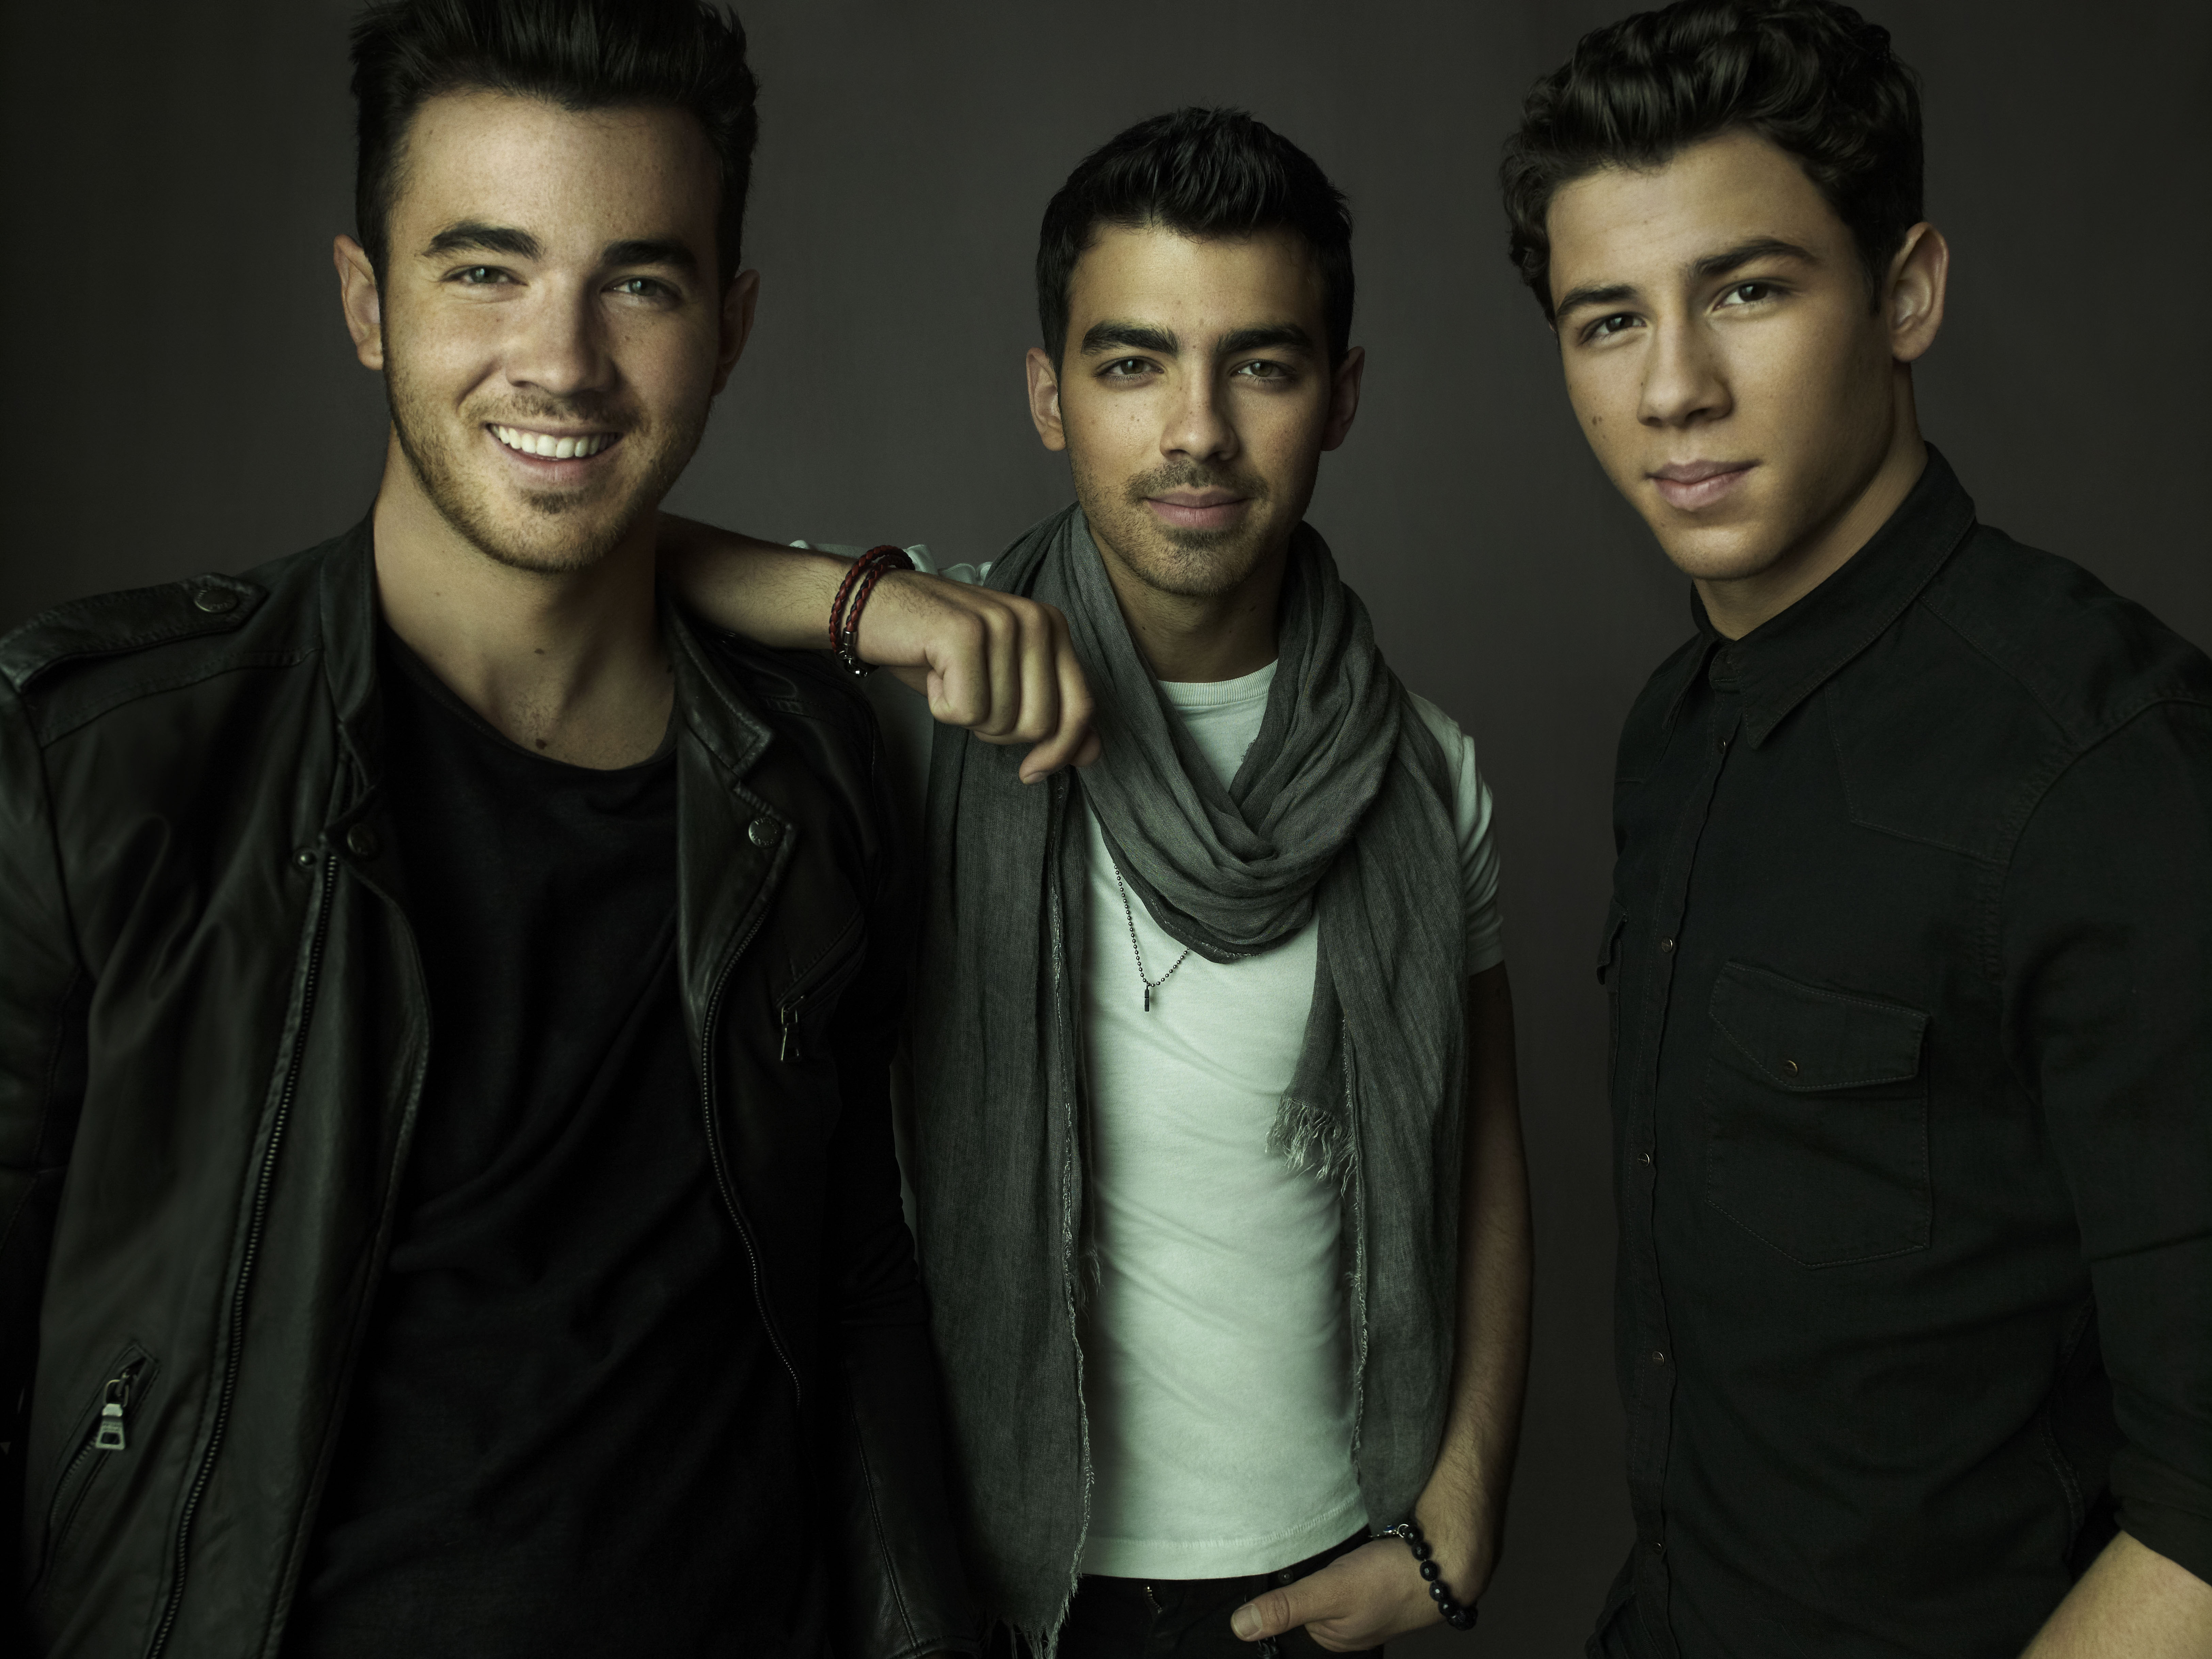 Jonas Brothers confirma shows no Brasil em 2013 - Guia da Semana